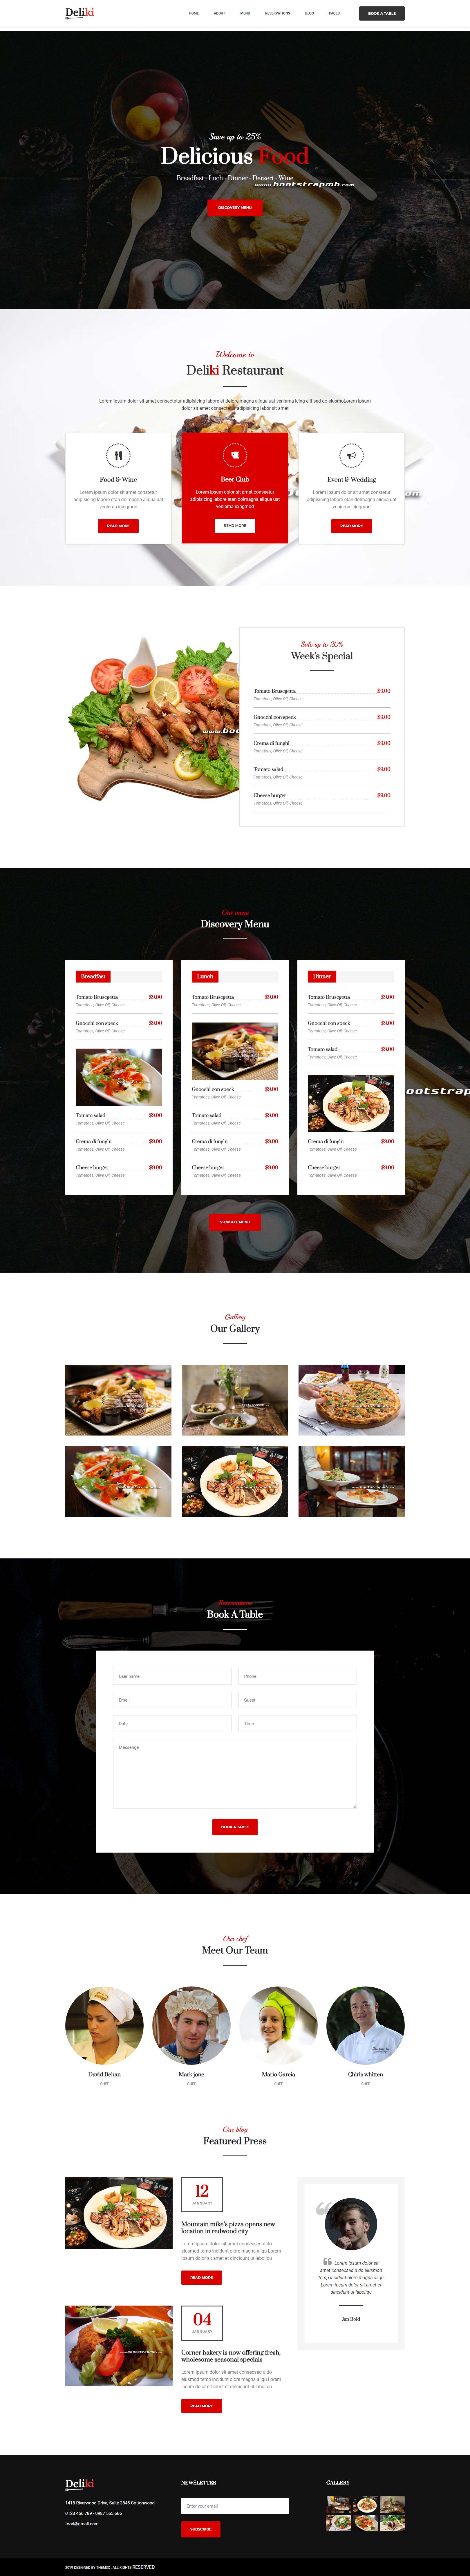 红色欧美风格的餐饮美食企业网站源码下载